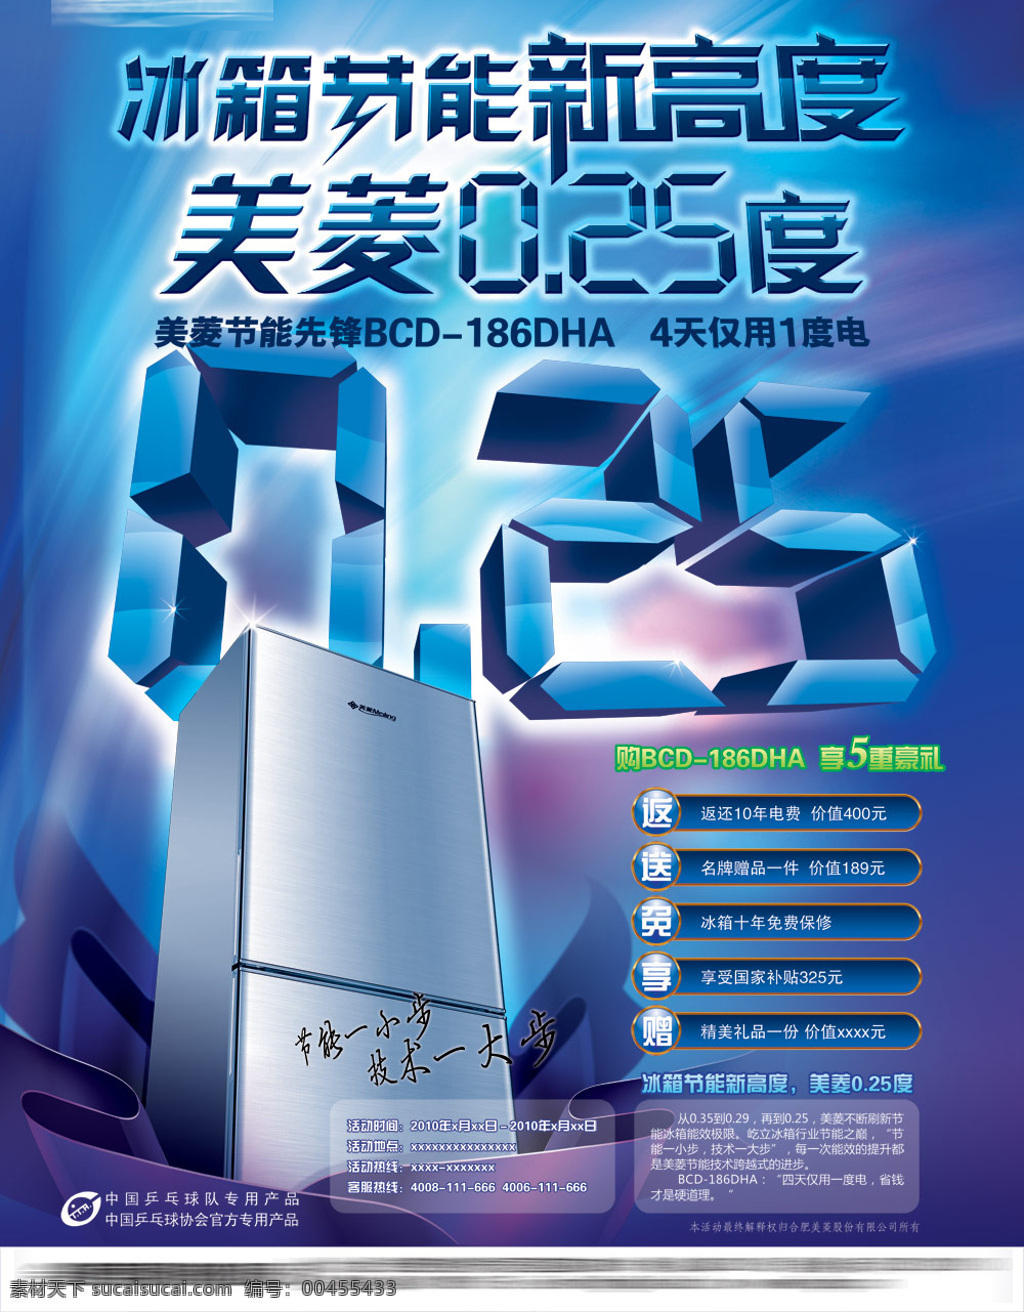 美菱 节能 新 锋 冰箱 广告 数字 电子科技 电器 电冰箱 蓝色